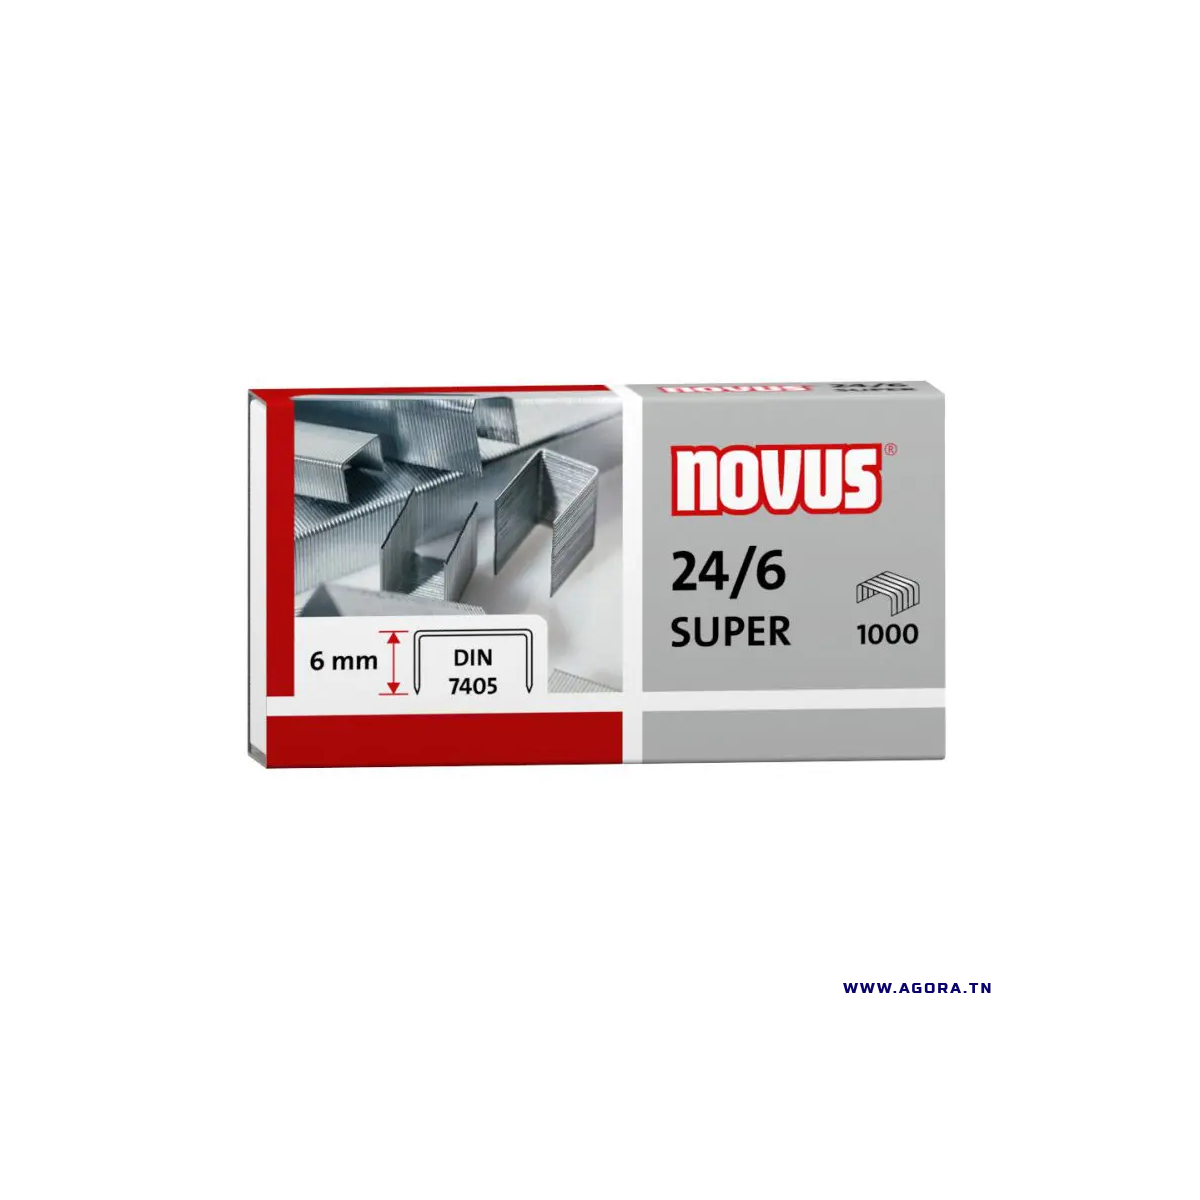 AGRAFES NOVUS 24/6 PAQUET DE 1000